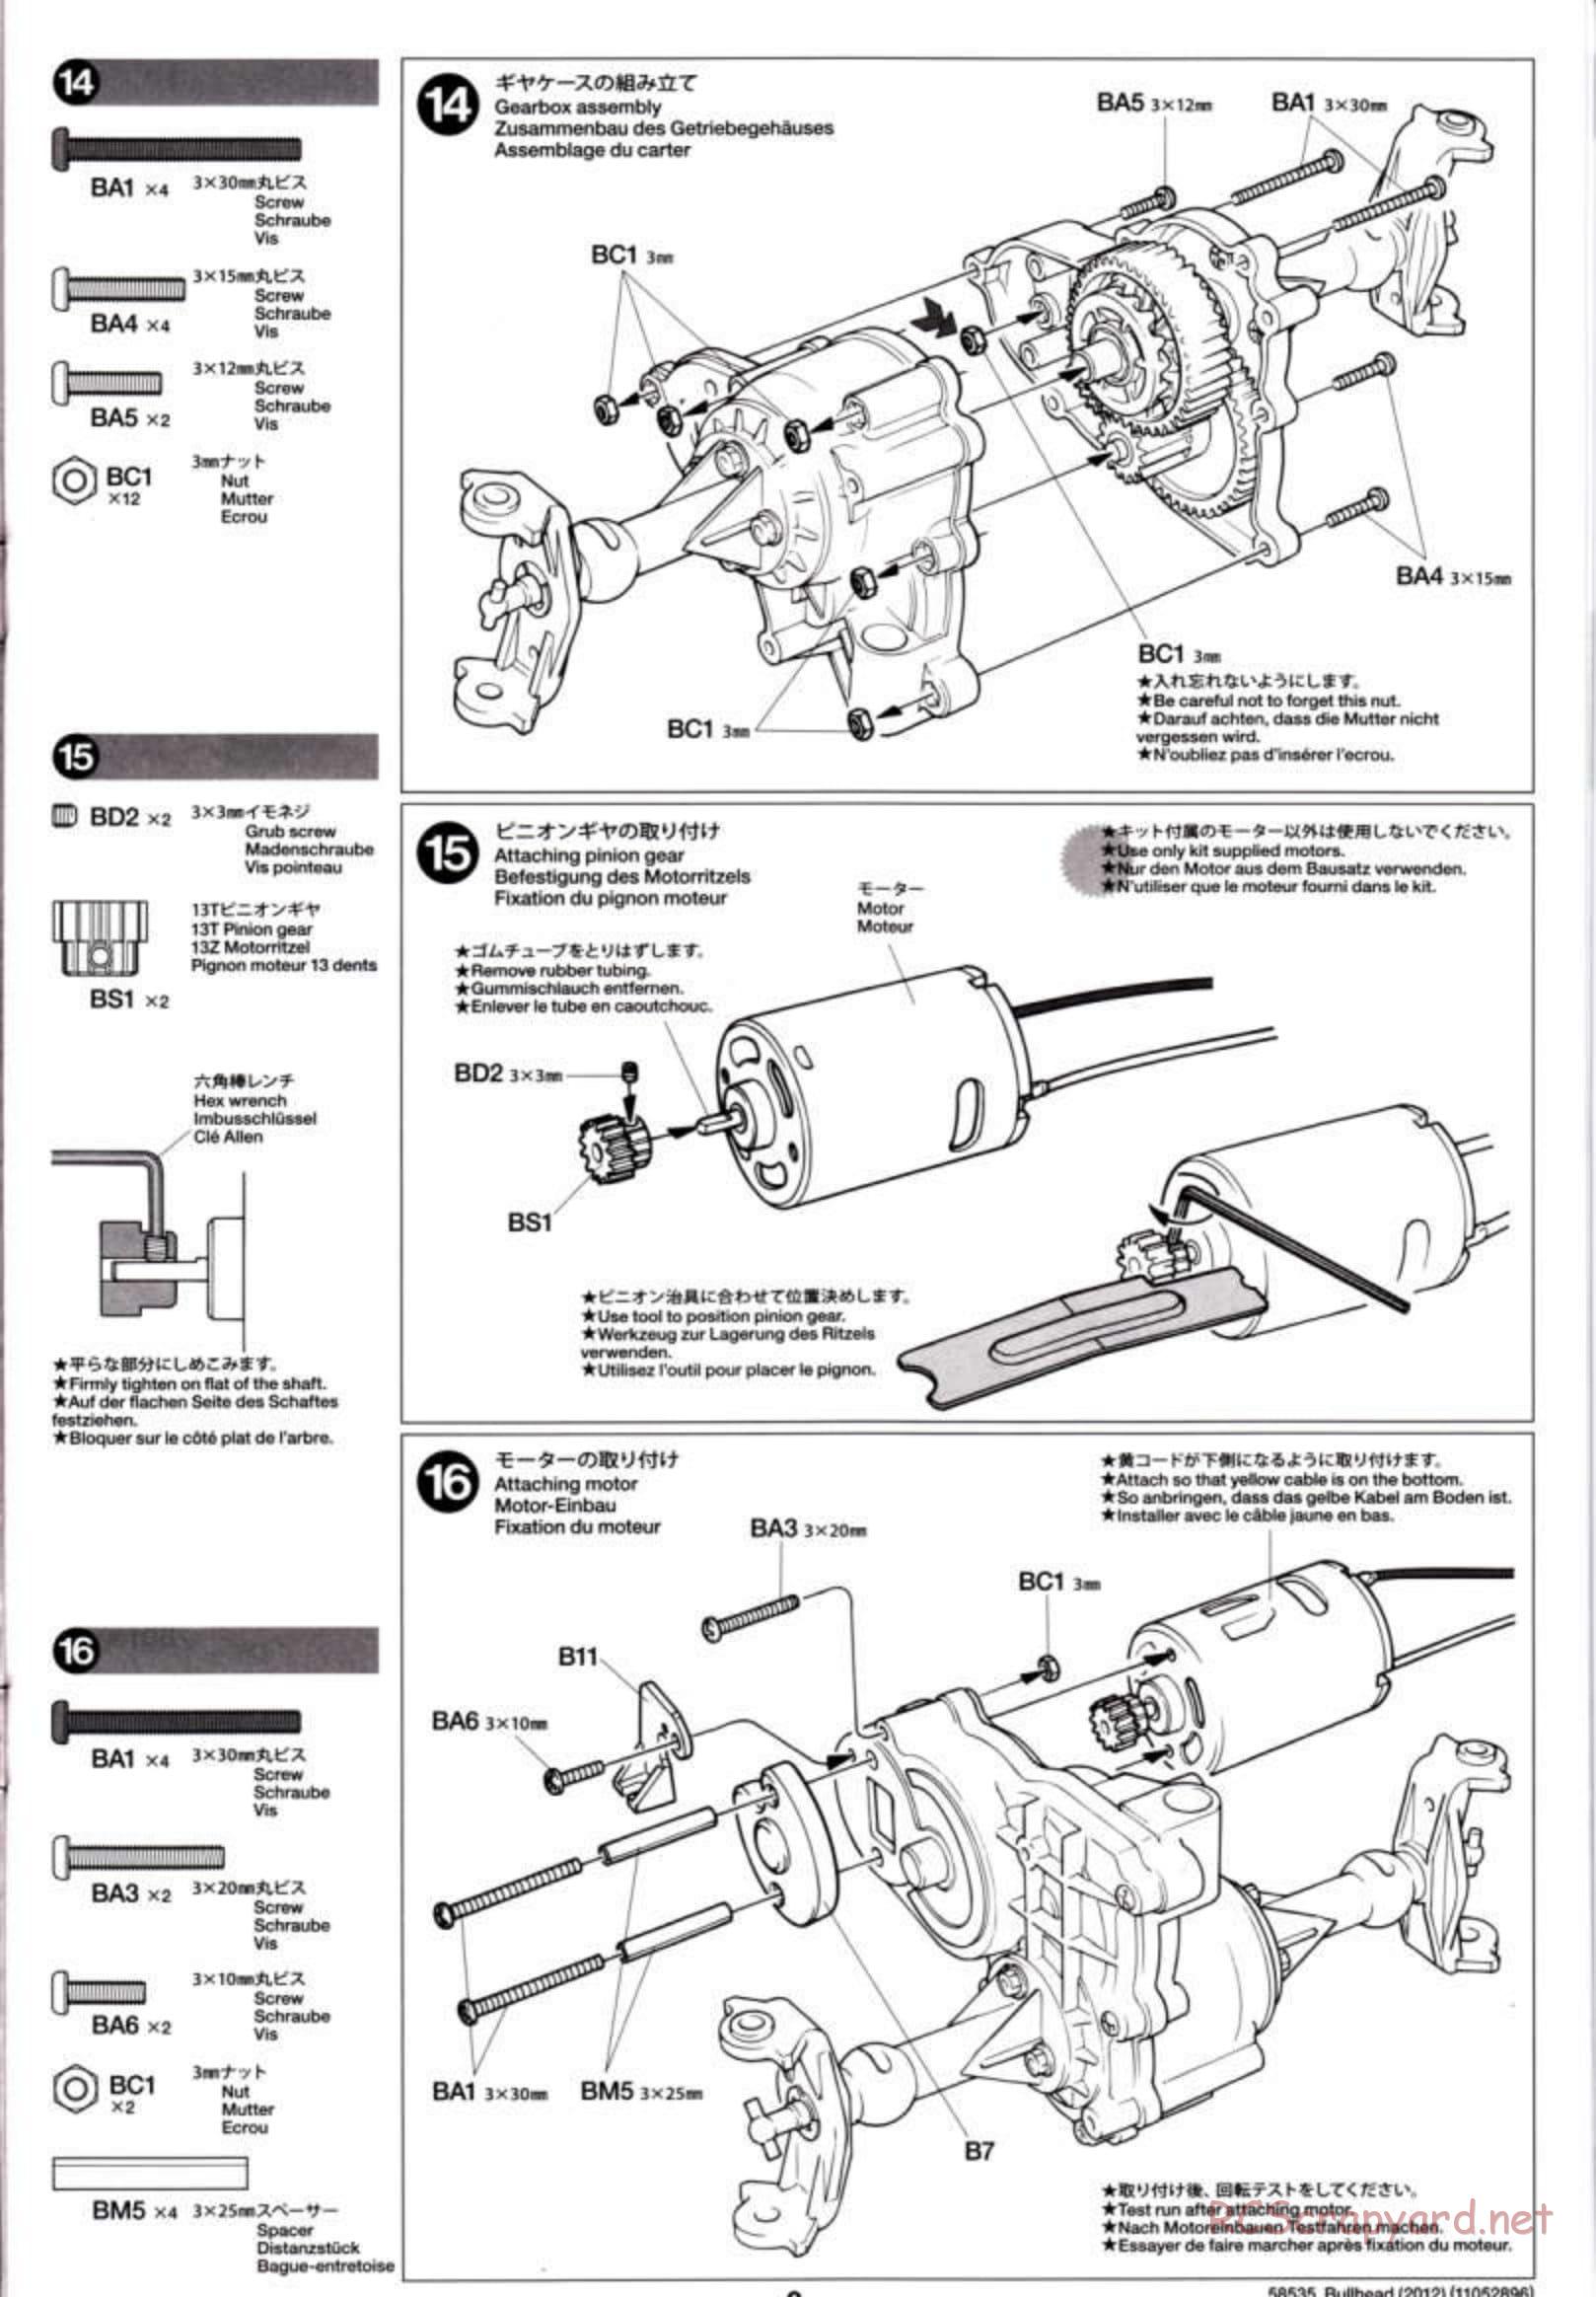 Tamiya - Bullhead 2012 - CB Chassis - Manual - Page 9